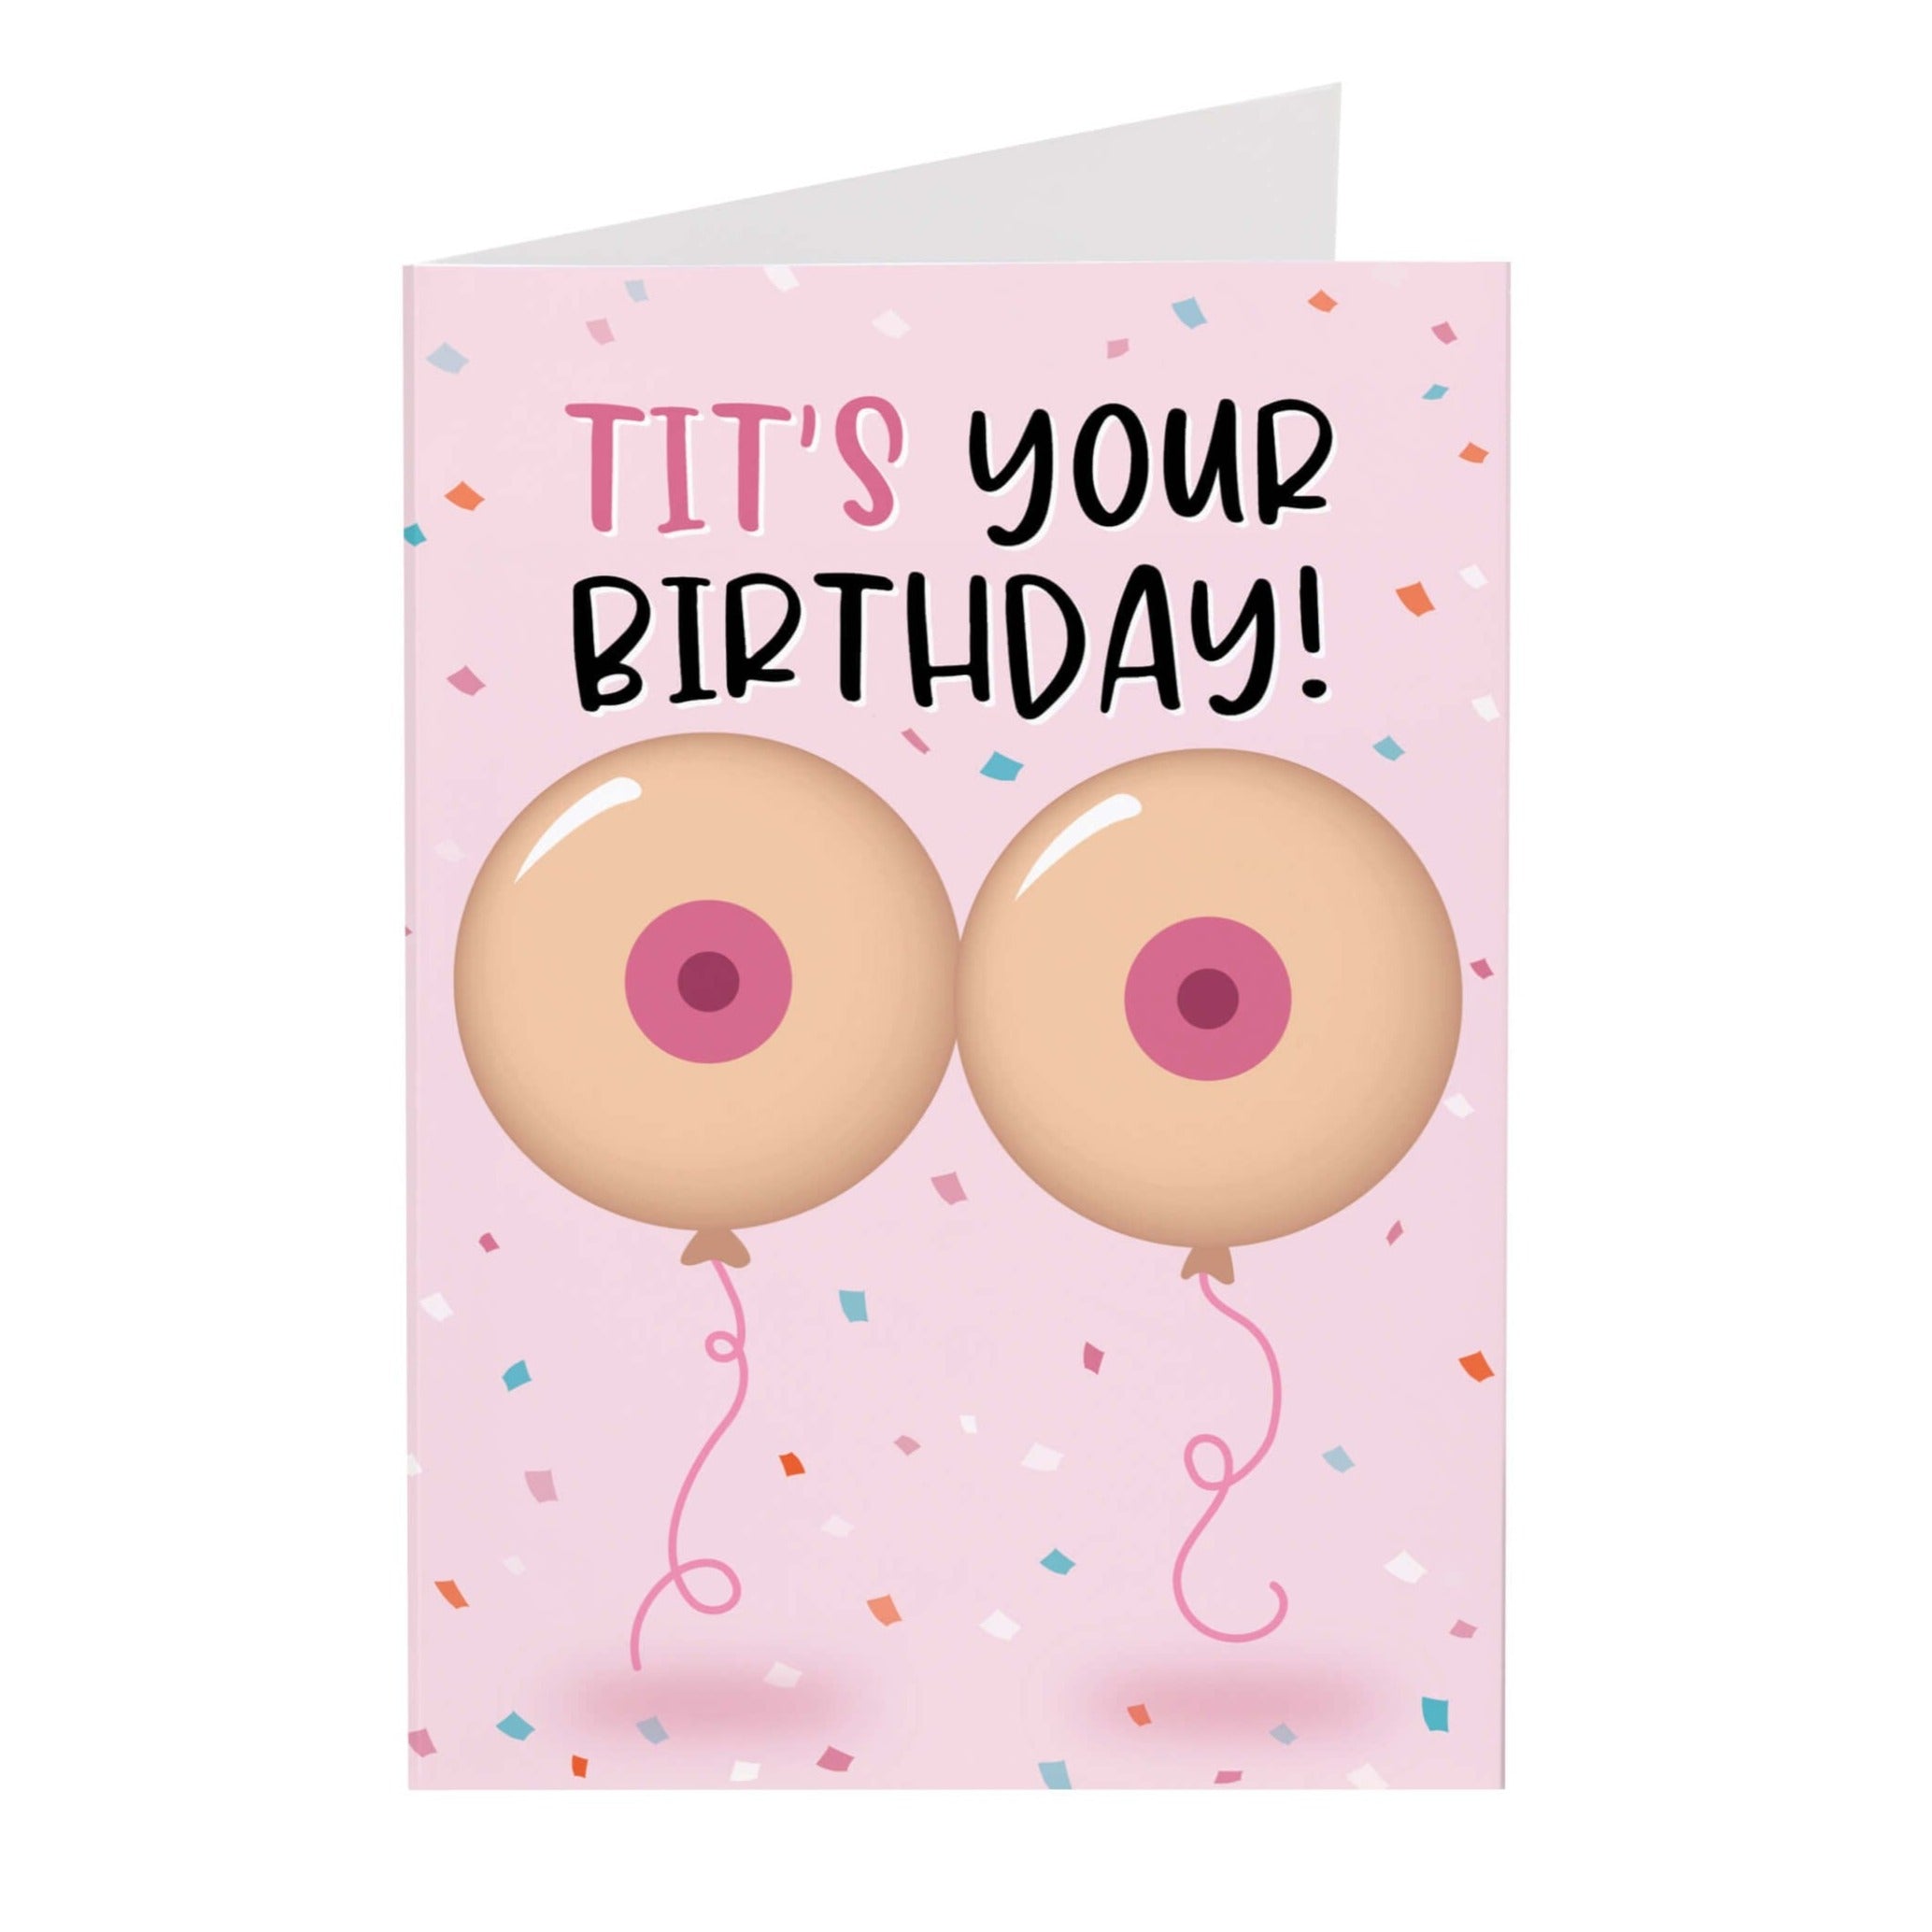 Happy Birthday Tits men gaysex